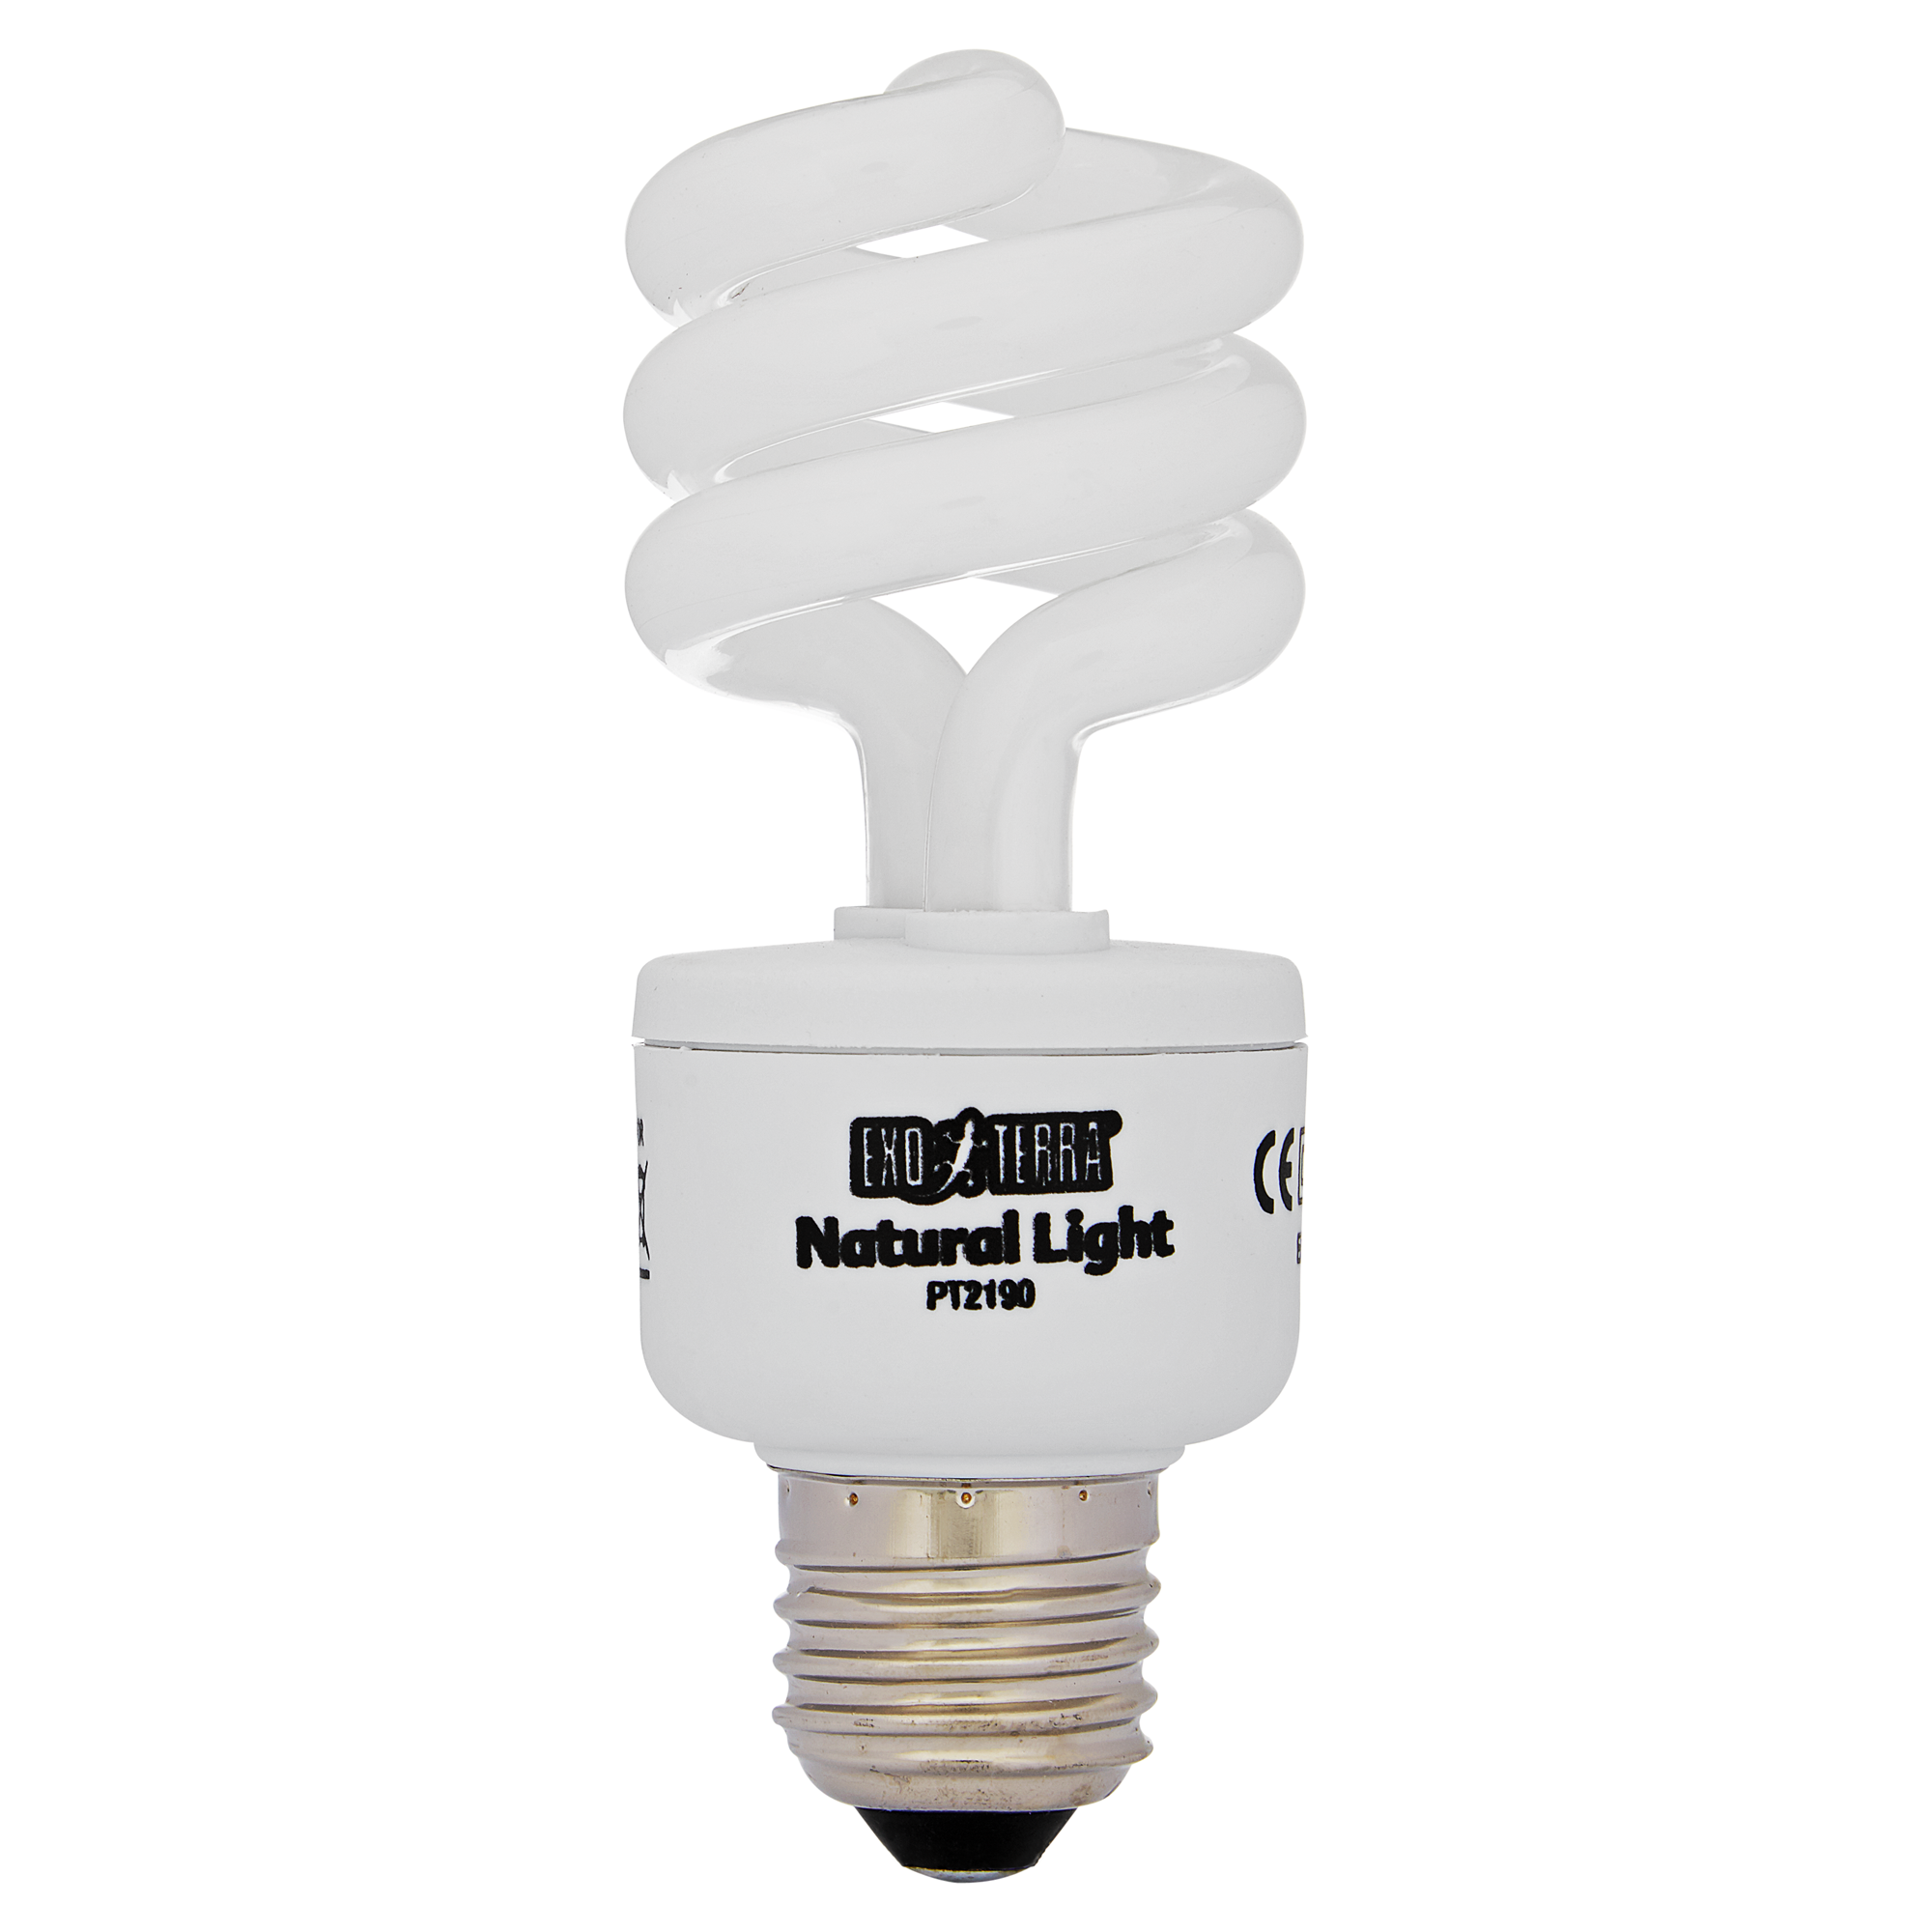 Vollspektrum-Tageslichtlampe "Natural Light" 13 W + product picture